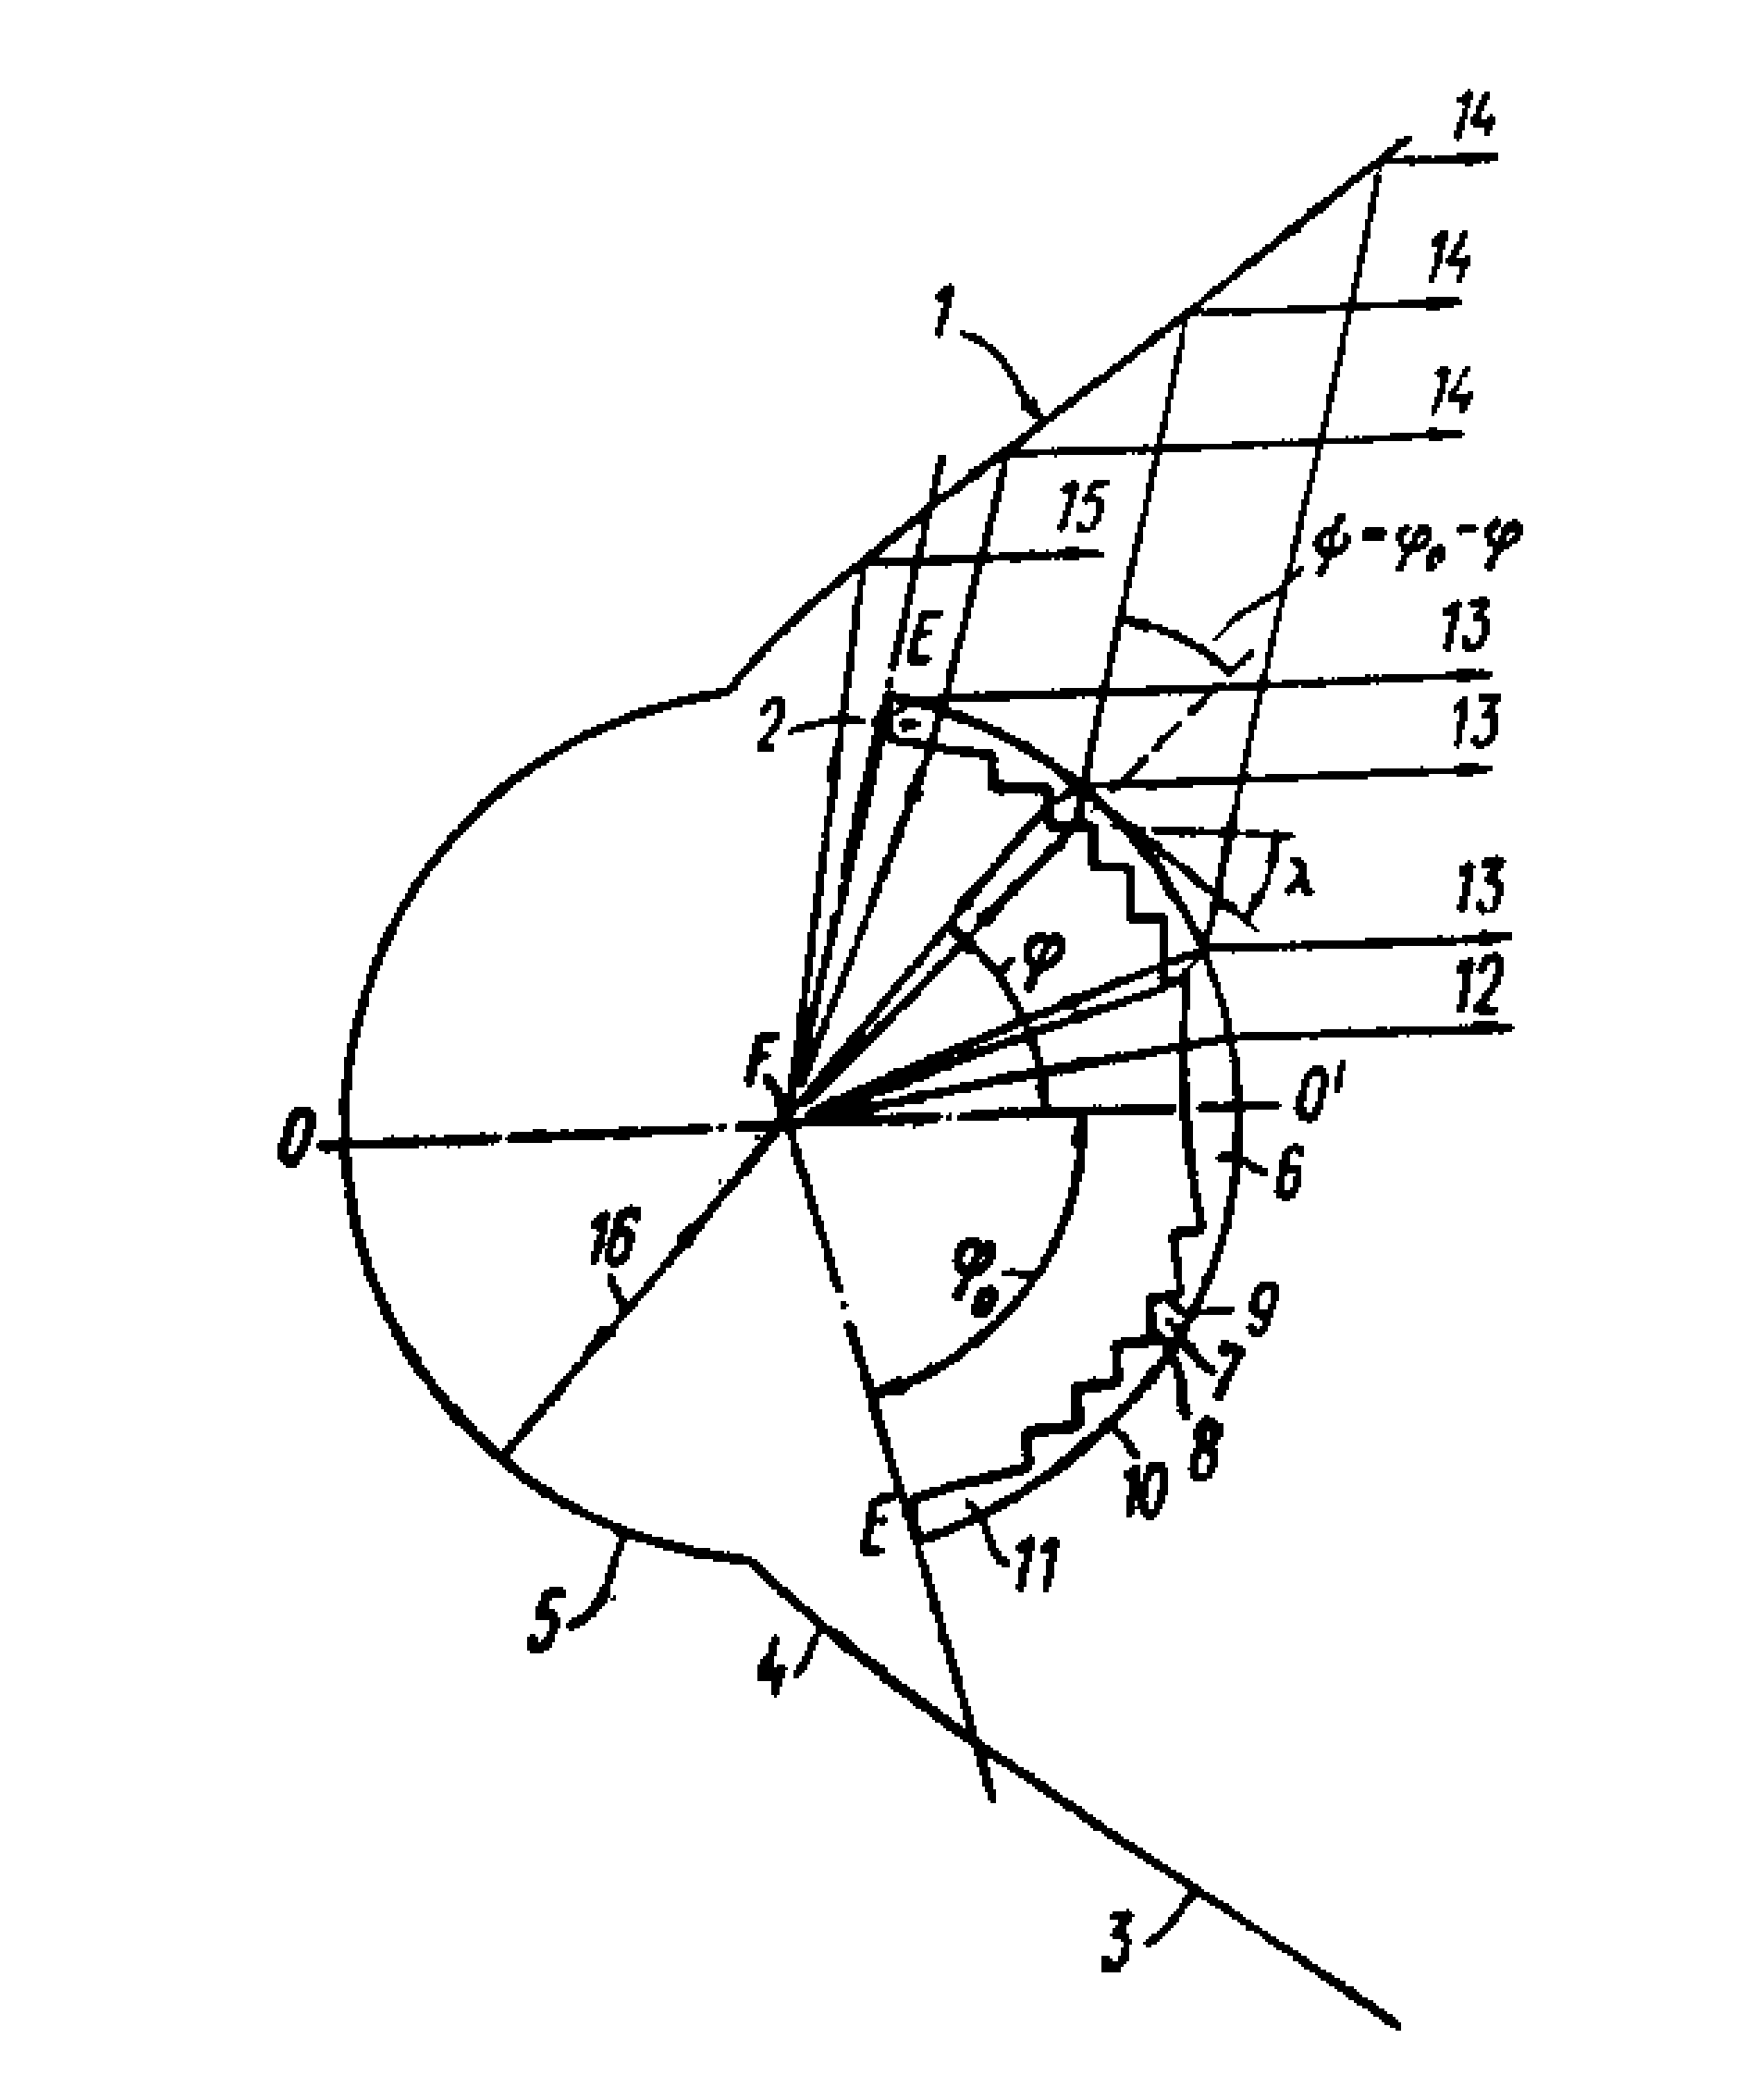 平行光管由凹反射镜(1)和折射镜(2)组成,折射镜作成具有较小直径的